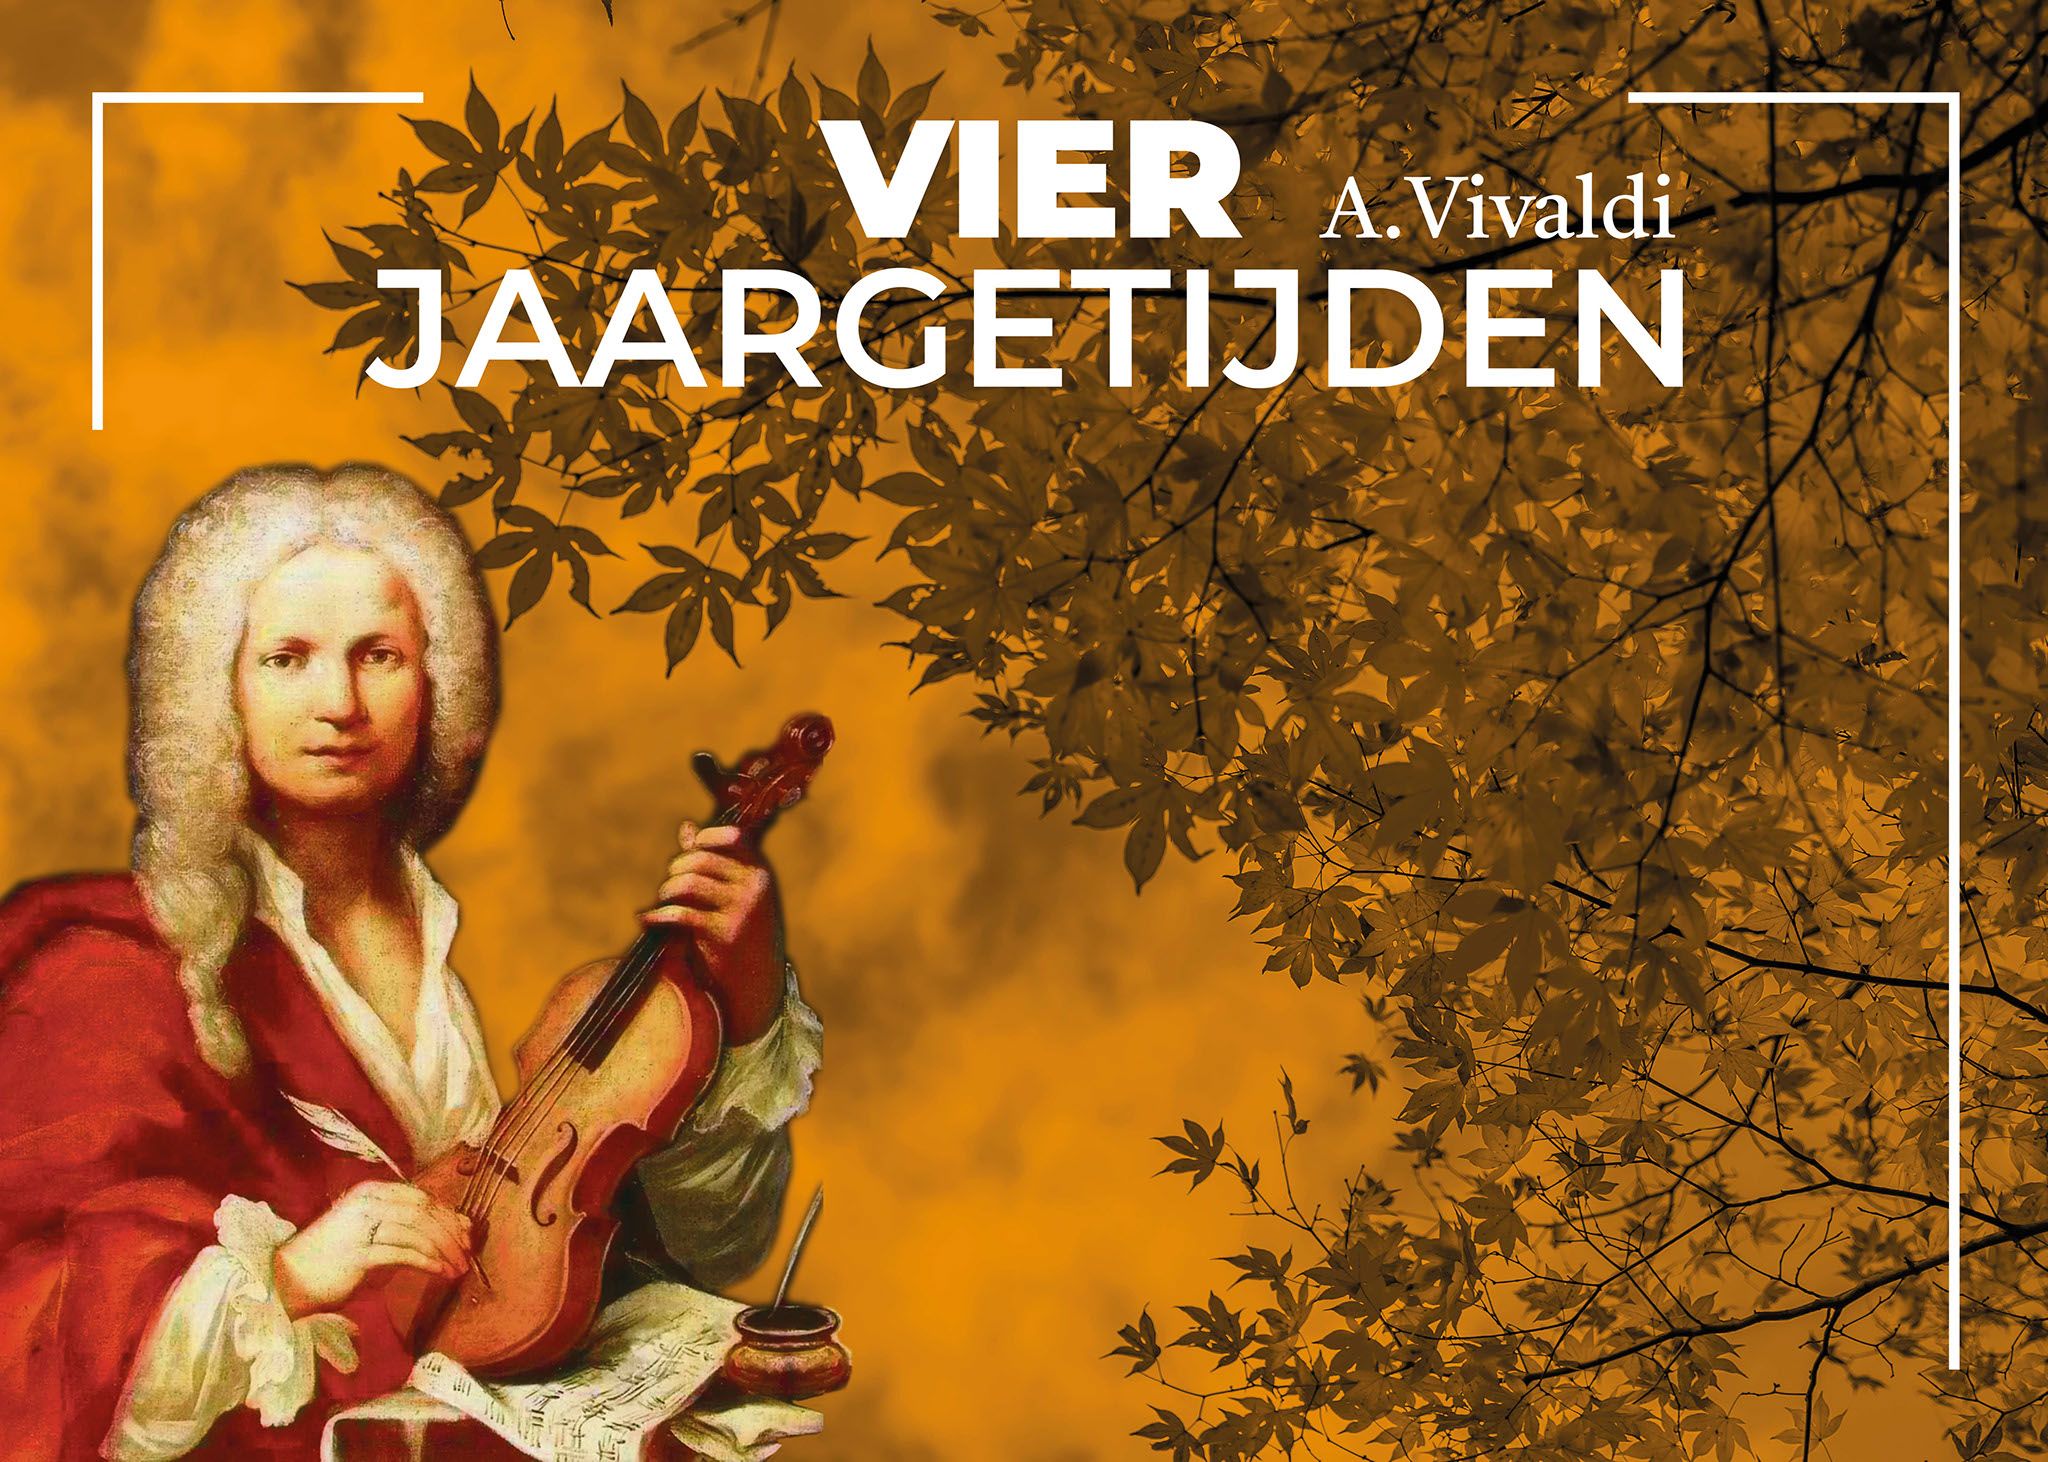 Vivaldi’s Vier Jaargetijden